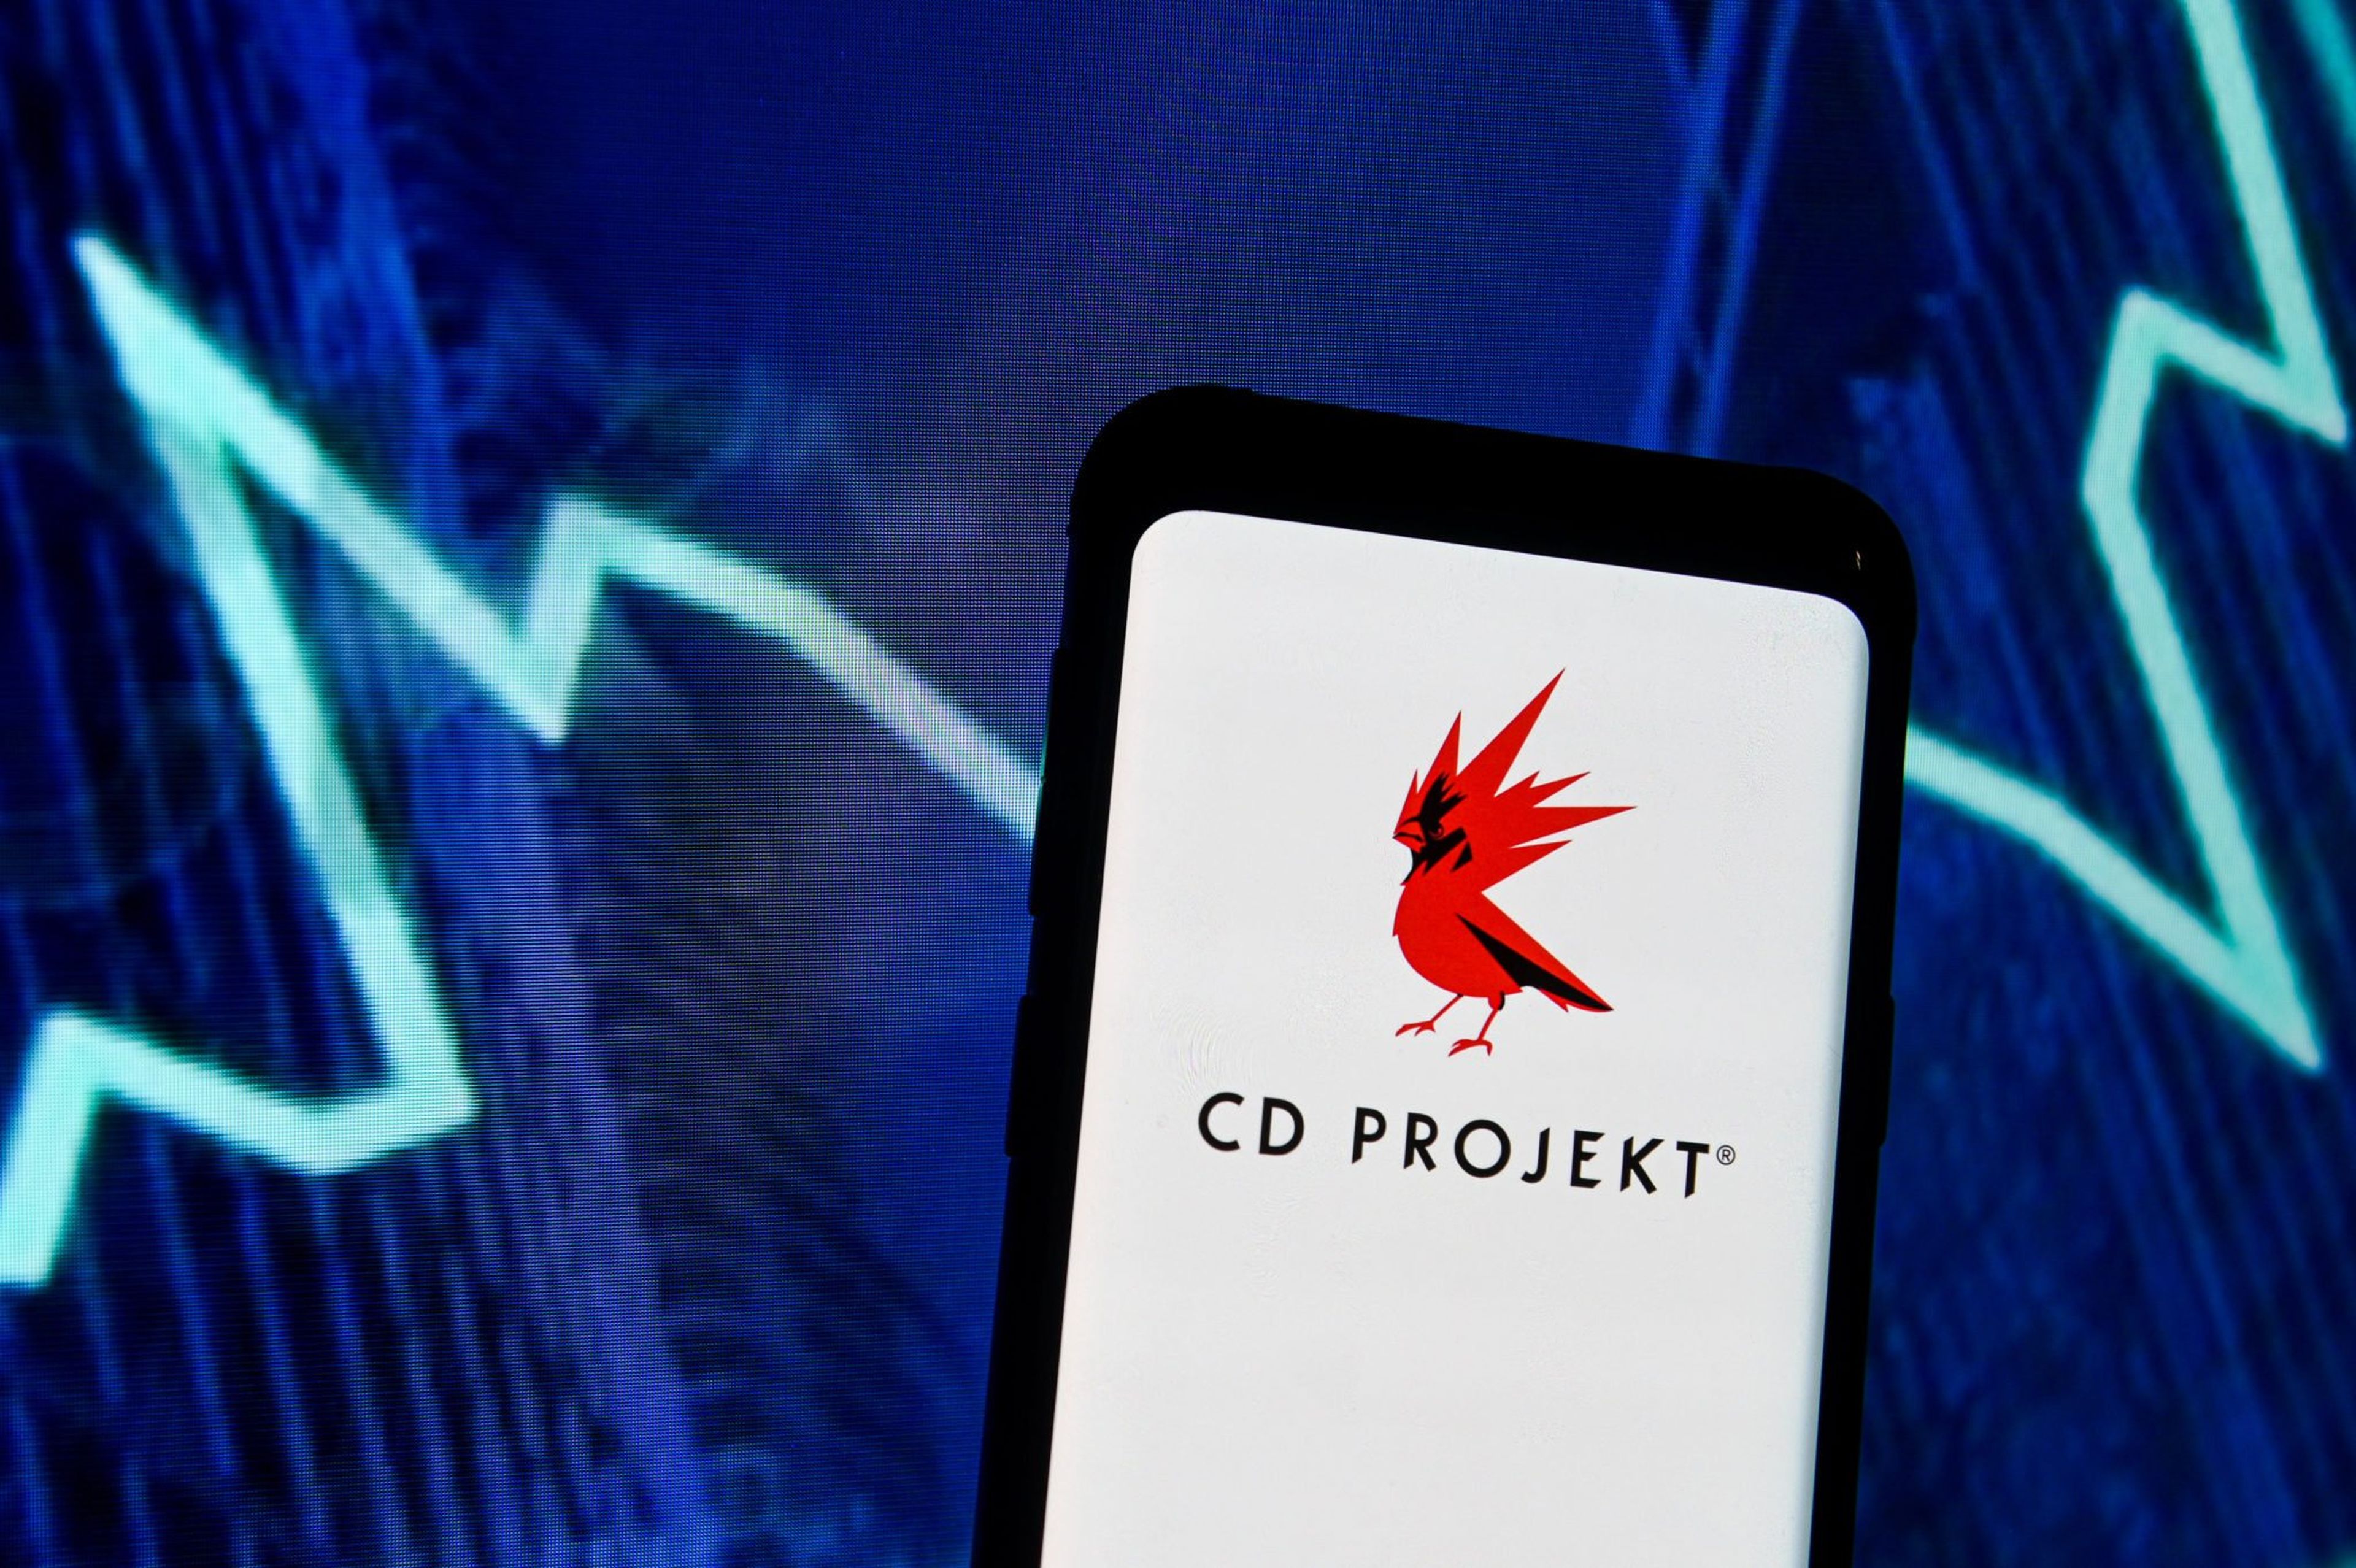 He aquí el logo de CD Projekt